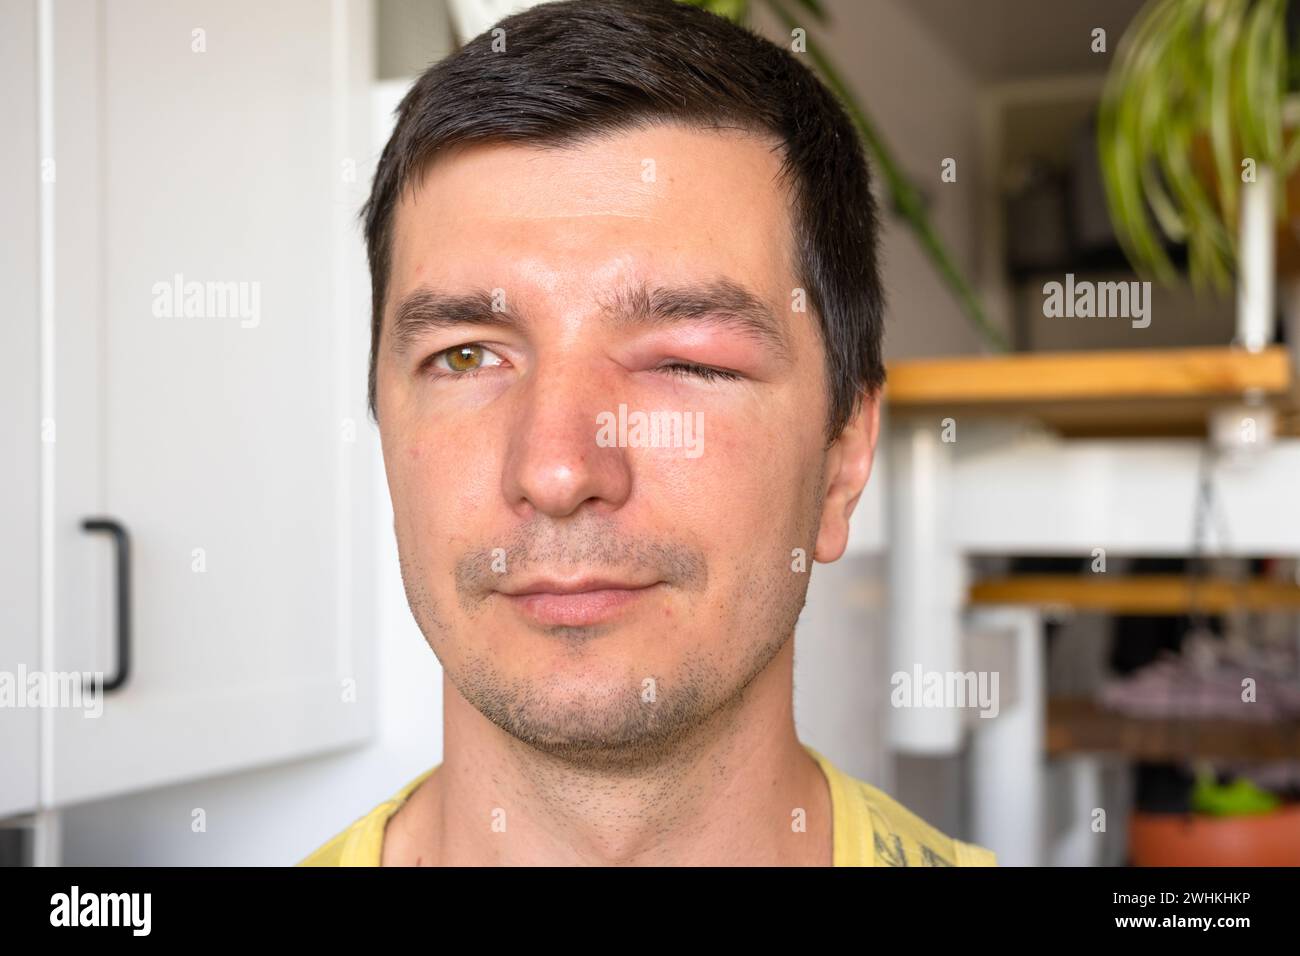 Ein rotes geschwollenes Augenlid auf dem Gesicht eines Mannes in Nahaufnahme ist eine Allergie auf einen Insektenbiss. Allergische Reaktion auf blutsaugende Insekten Stockfoto